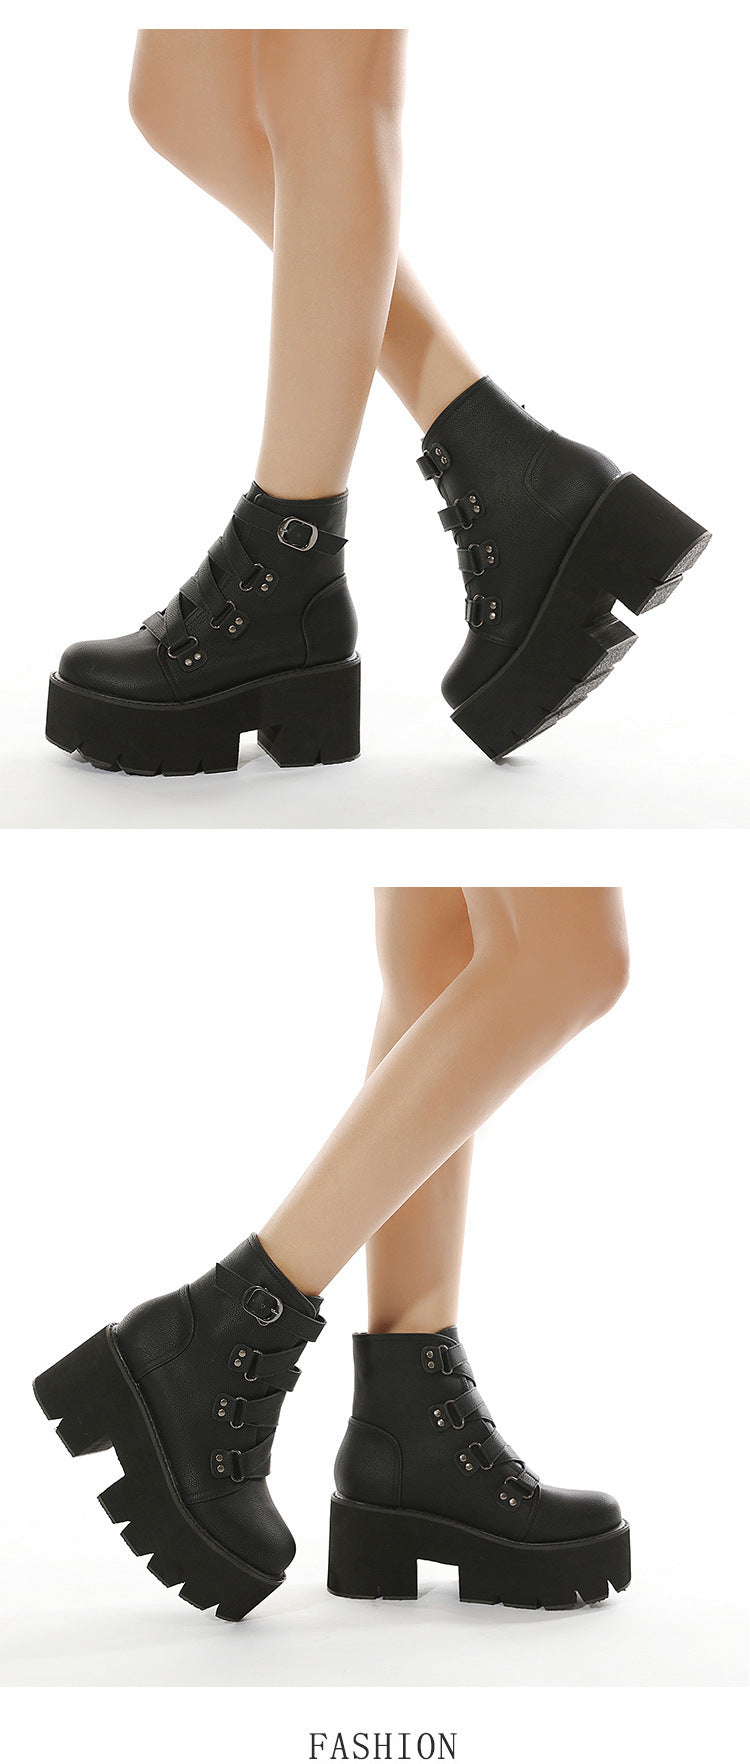 Women's Boots Amazon Thick Bottom Hot Chunky Heel High Heel Booties